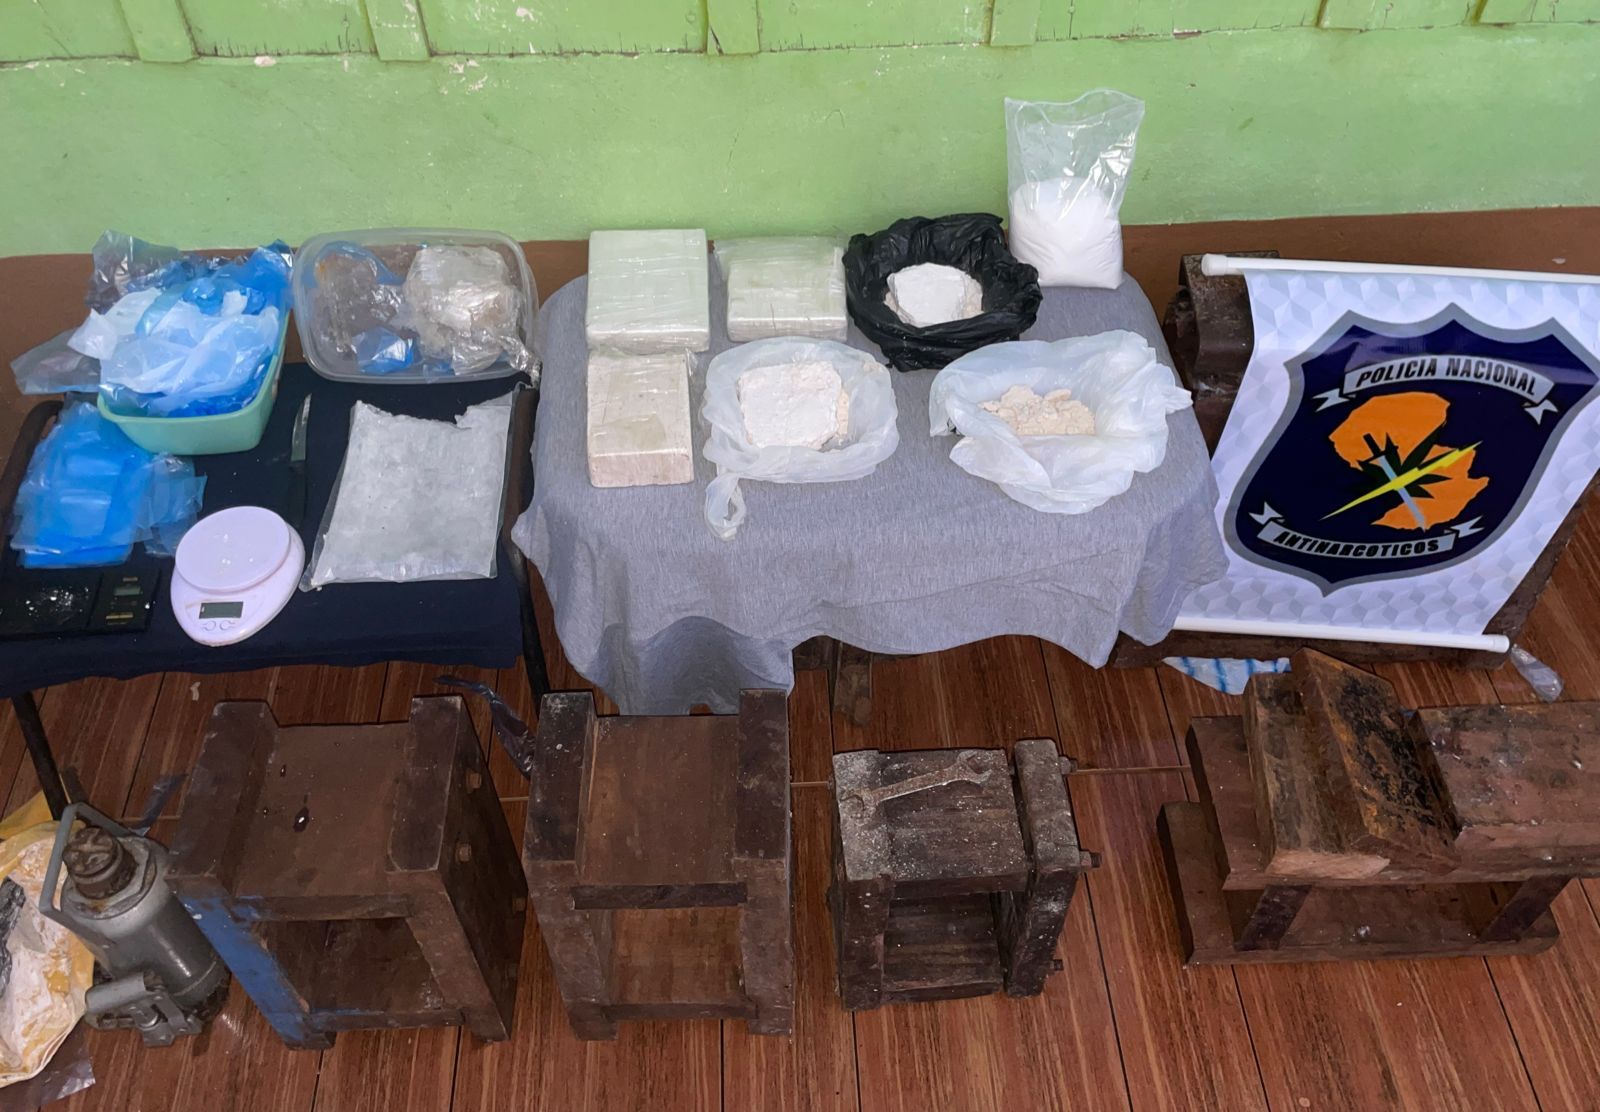 “Departamento Antinarcóticos incauta importante cantidad de cocaína en operativos en todo el país”